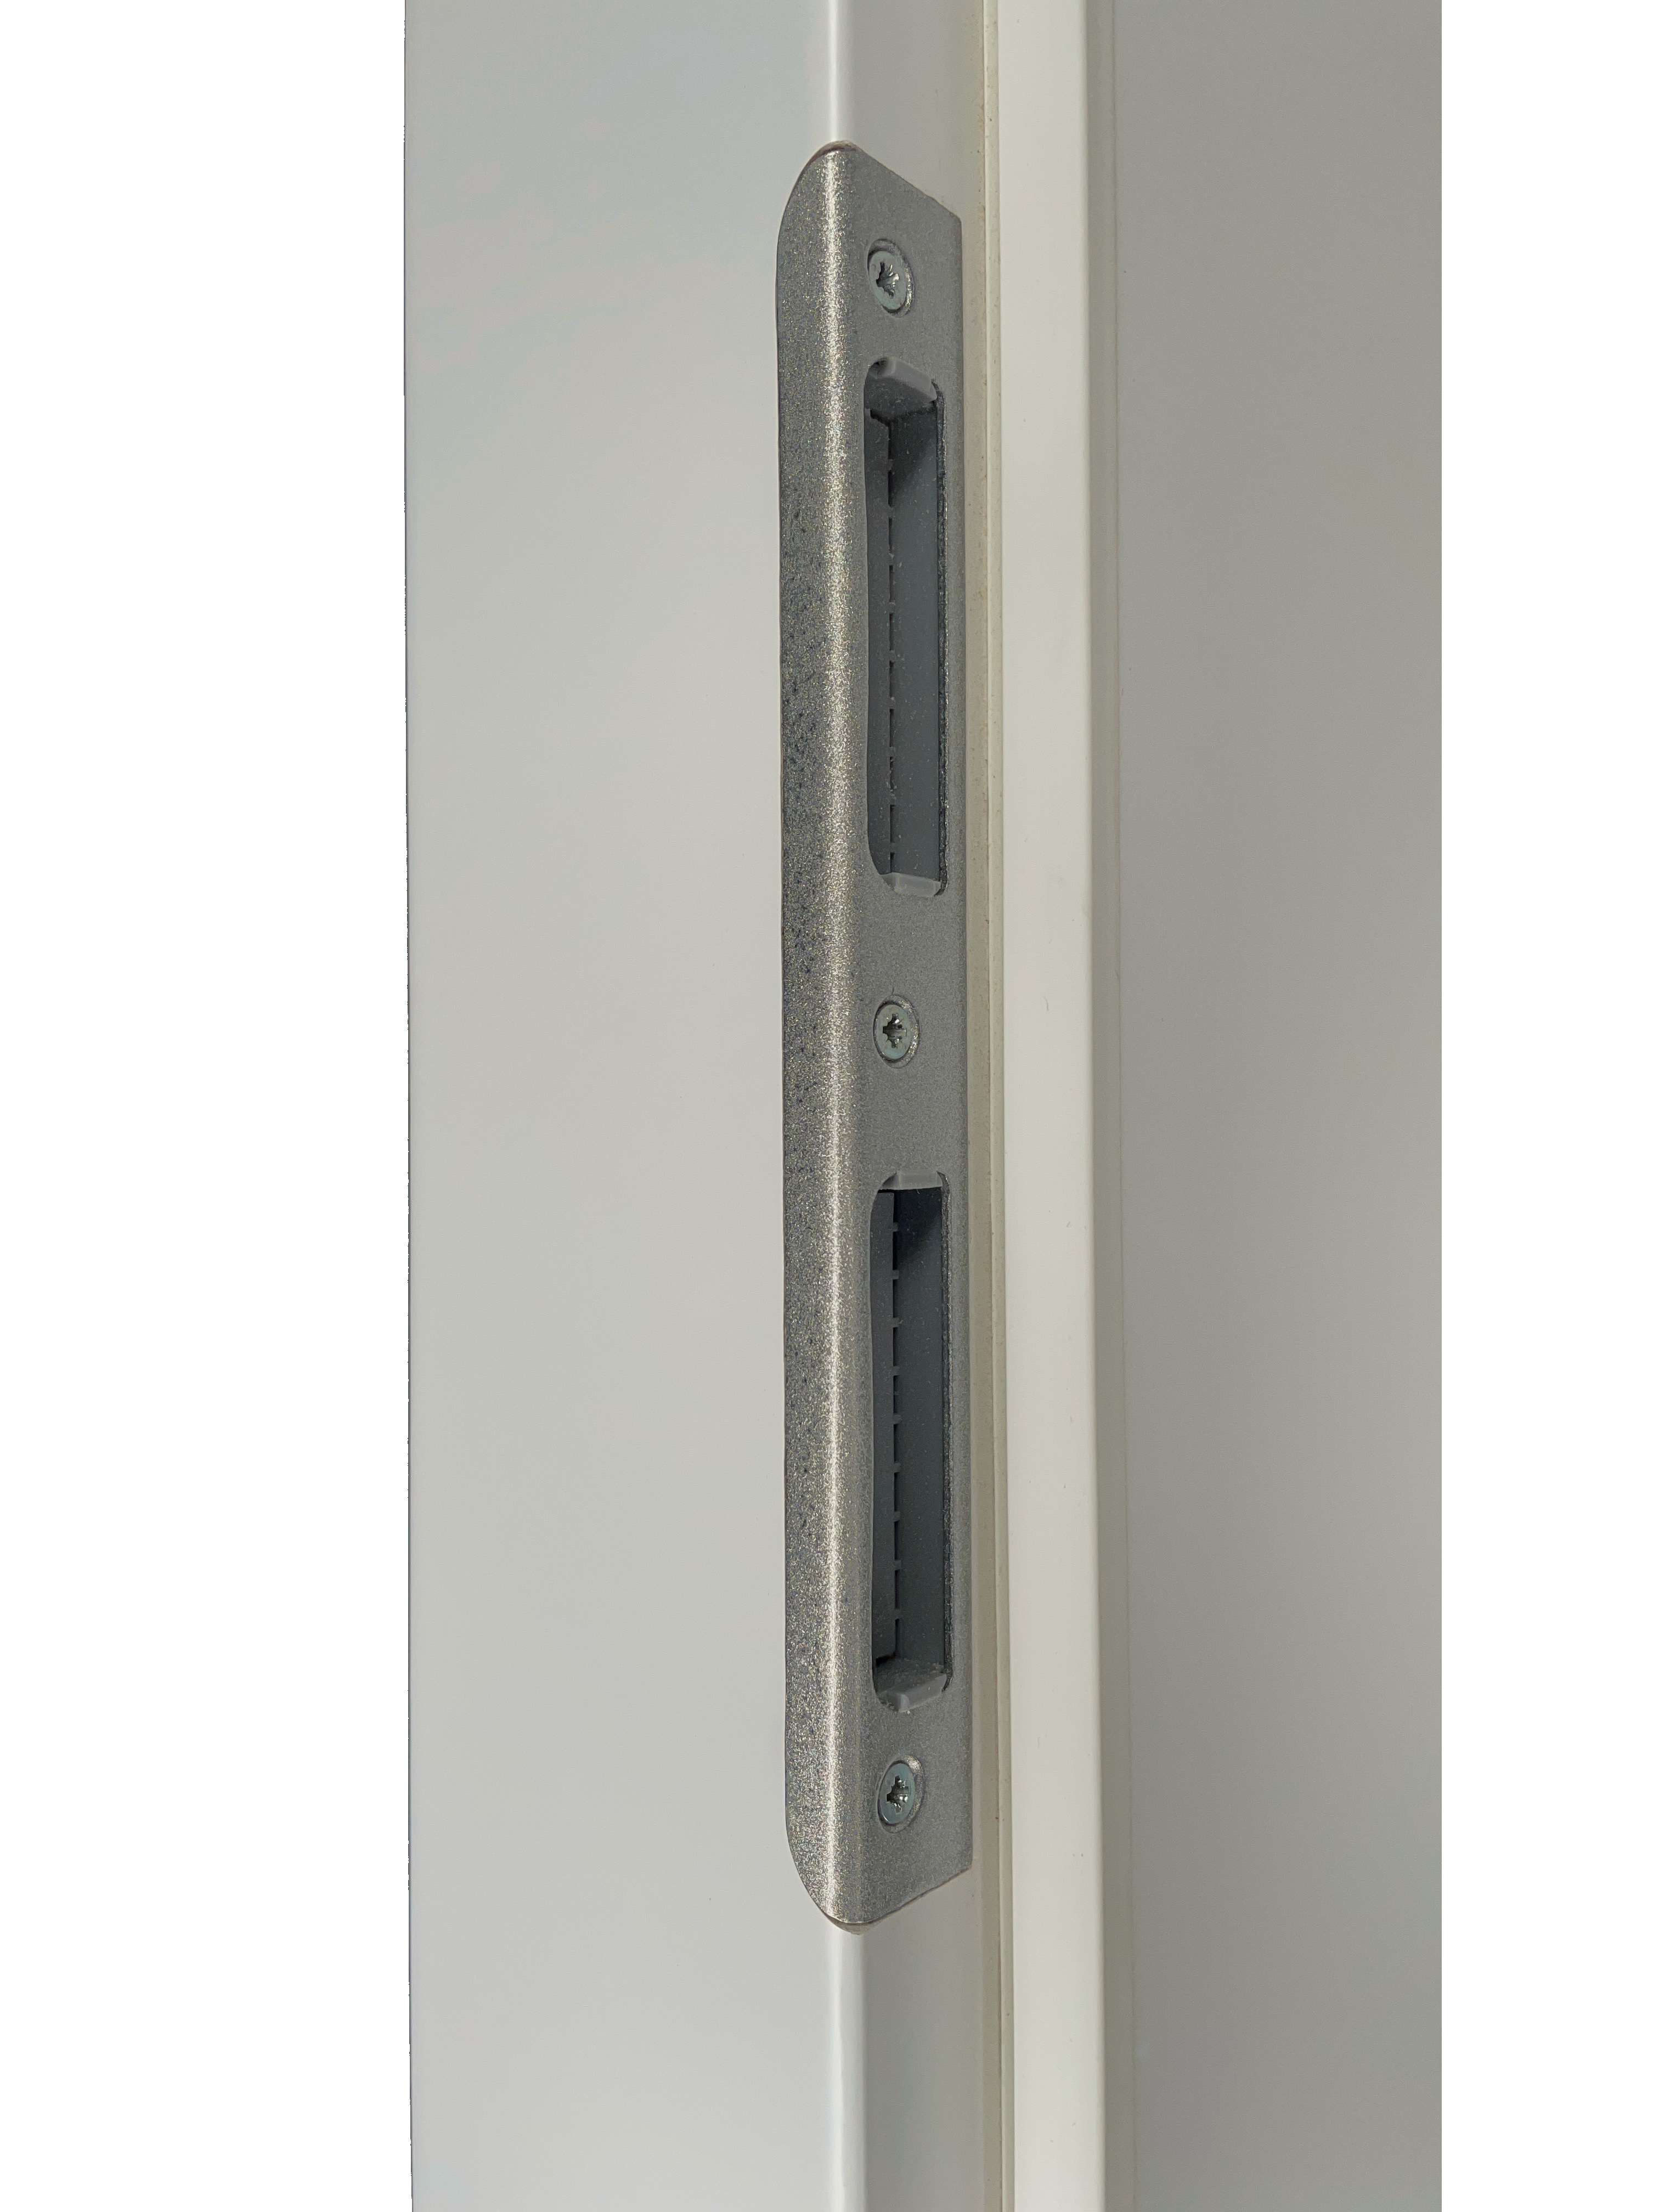 Wohnungseingangstür mit Zarge soft-weiß 3 Kassetten klassisch Eckkante SK3 / KK3 - Modell Stiltür K31